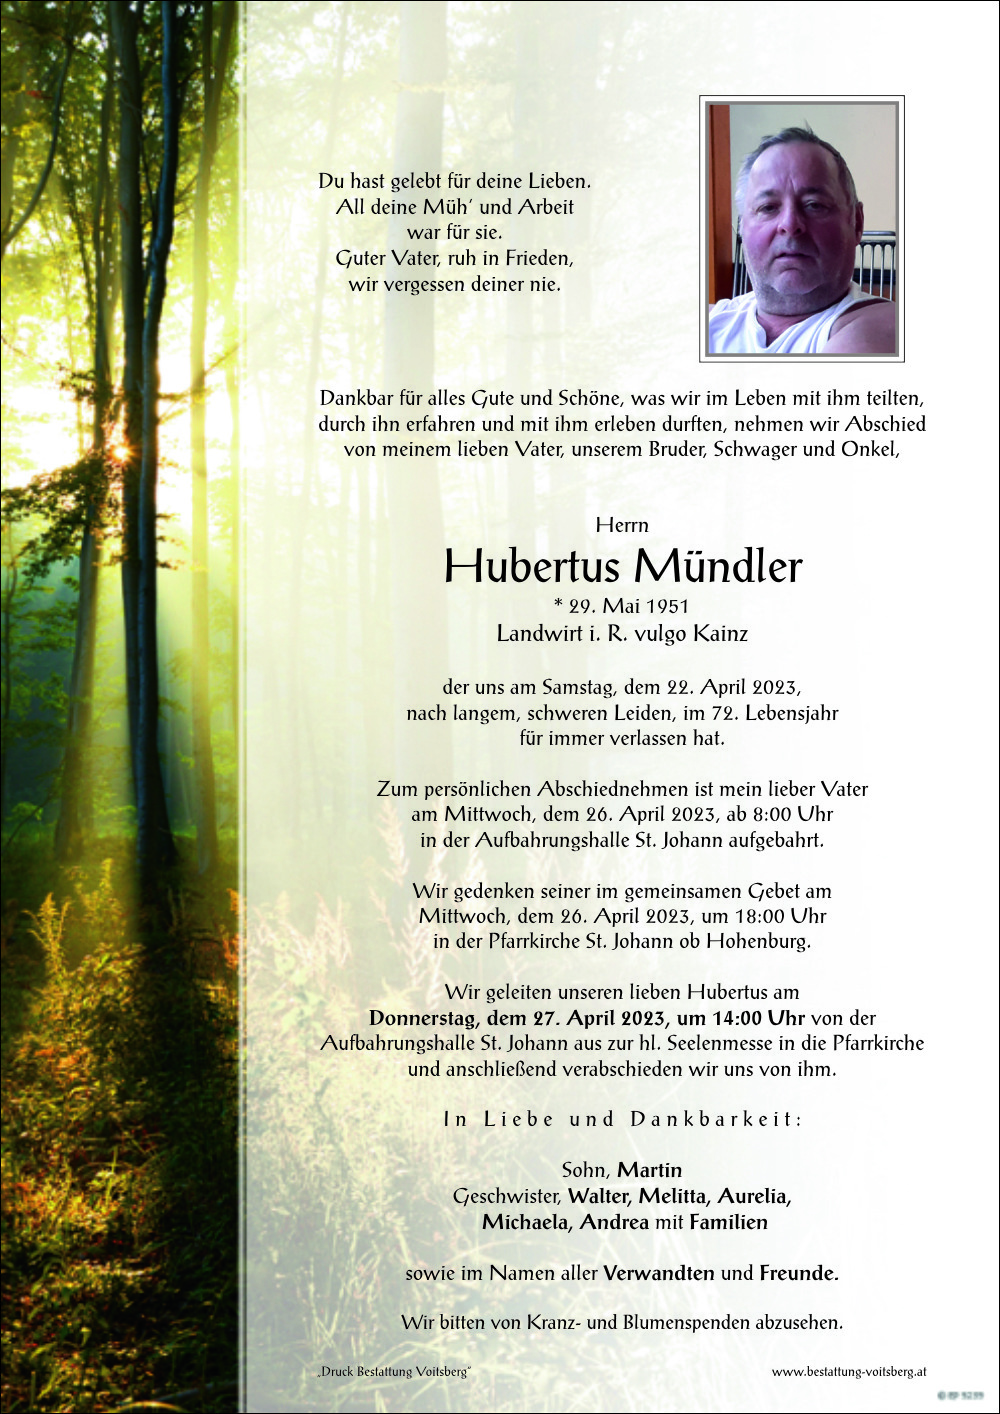 Hubertus Mündler